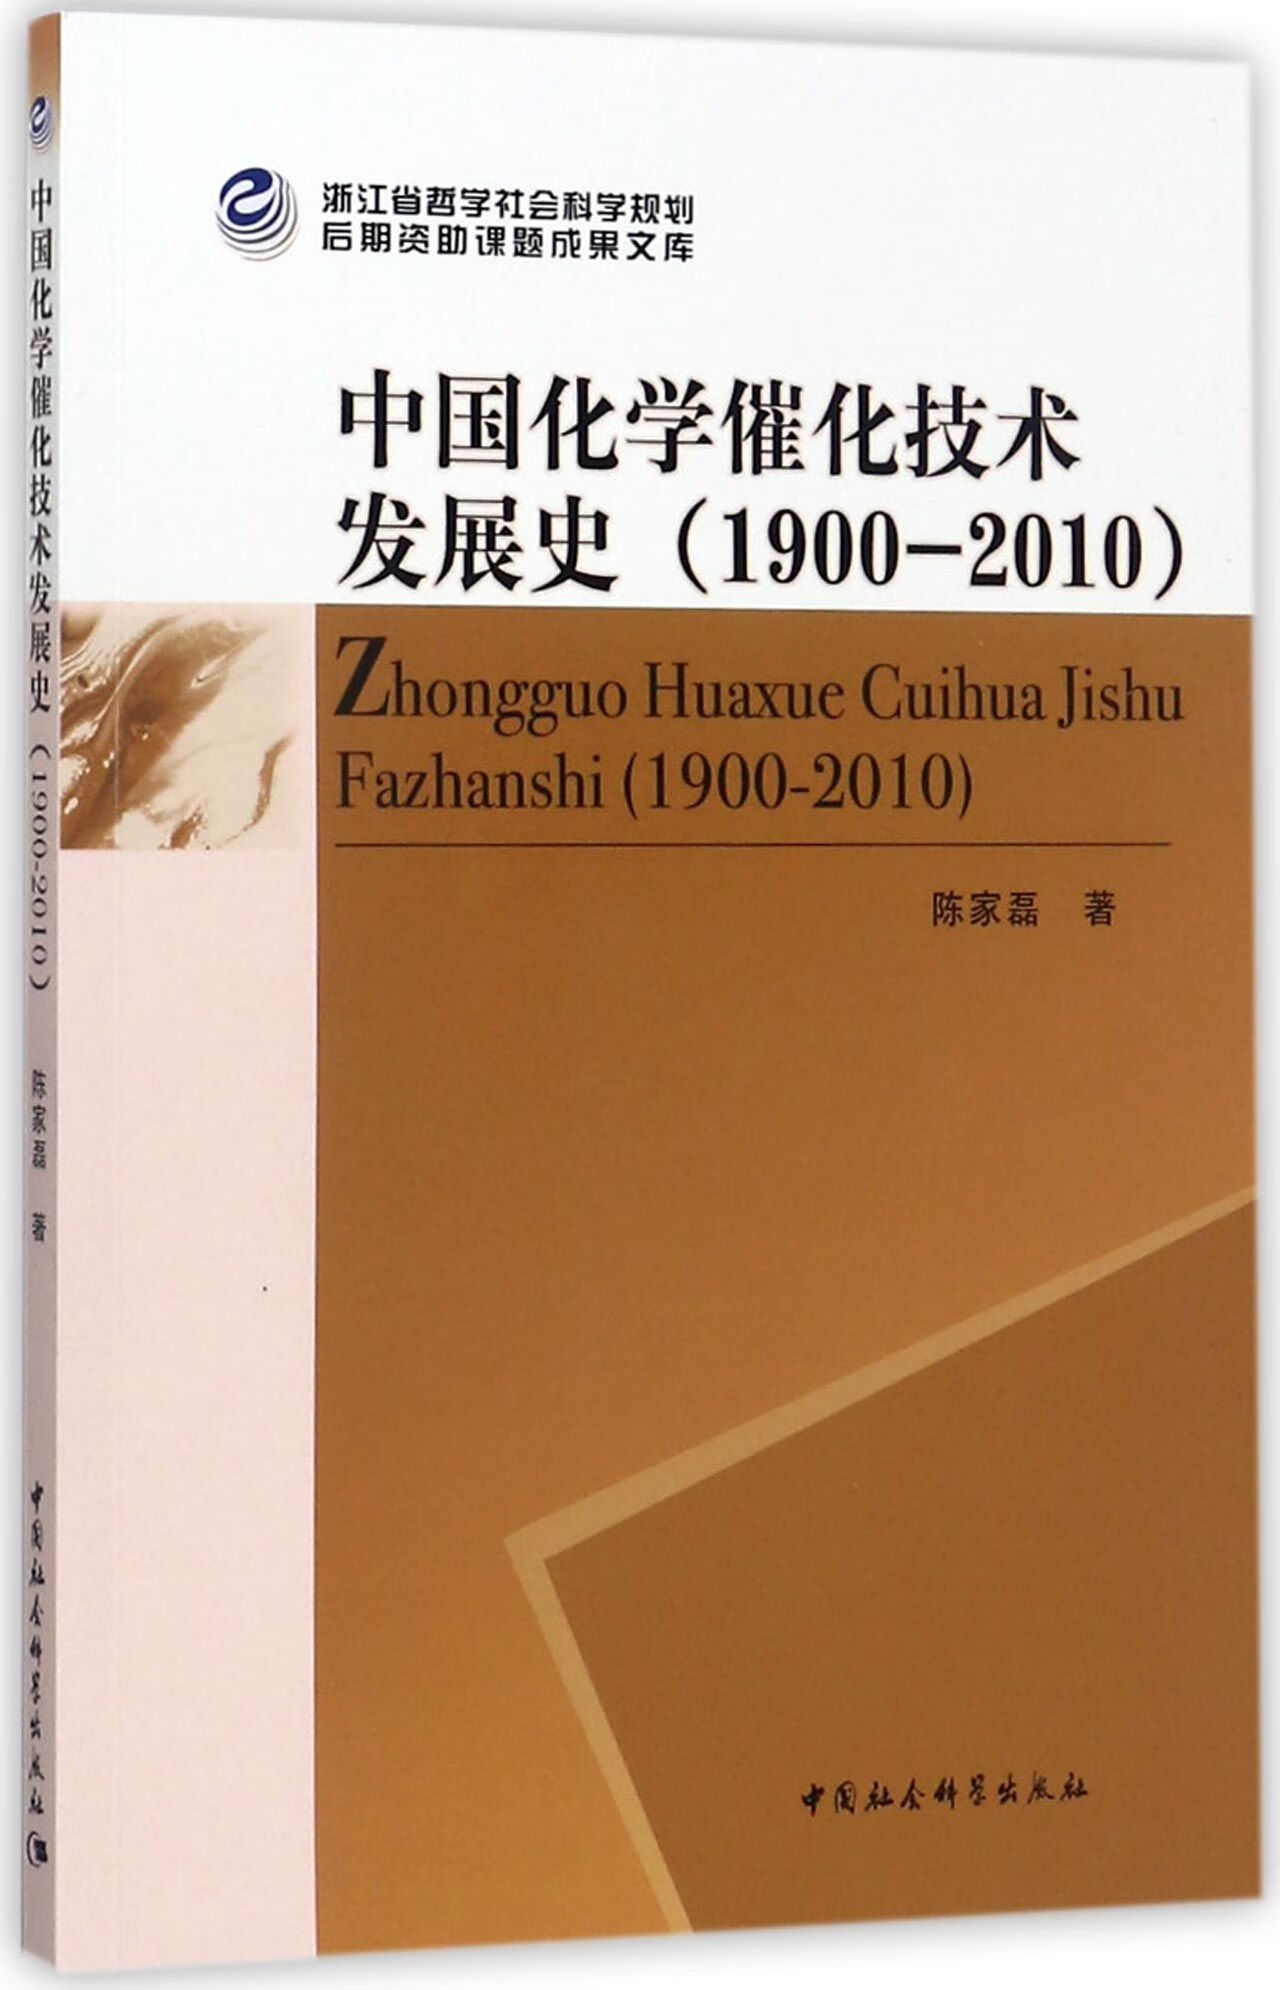 中国化学催化技术发展史(1900-2010)科学与自然/晶体学陈家磊9787520306577 azw3格式下载